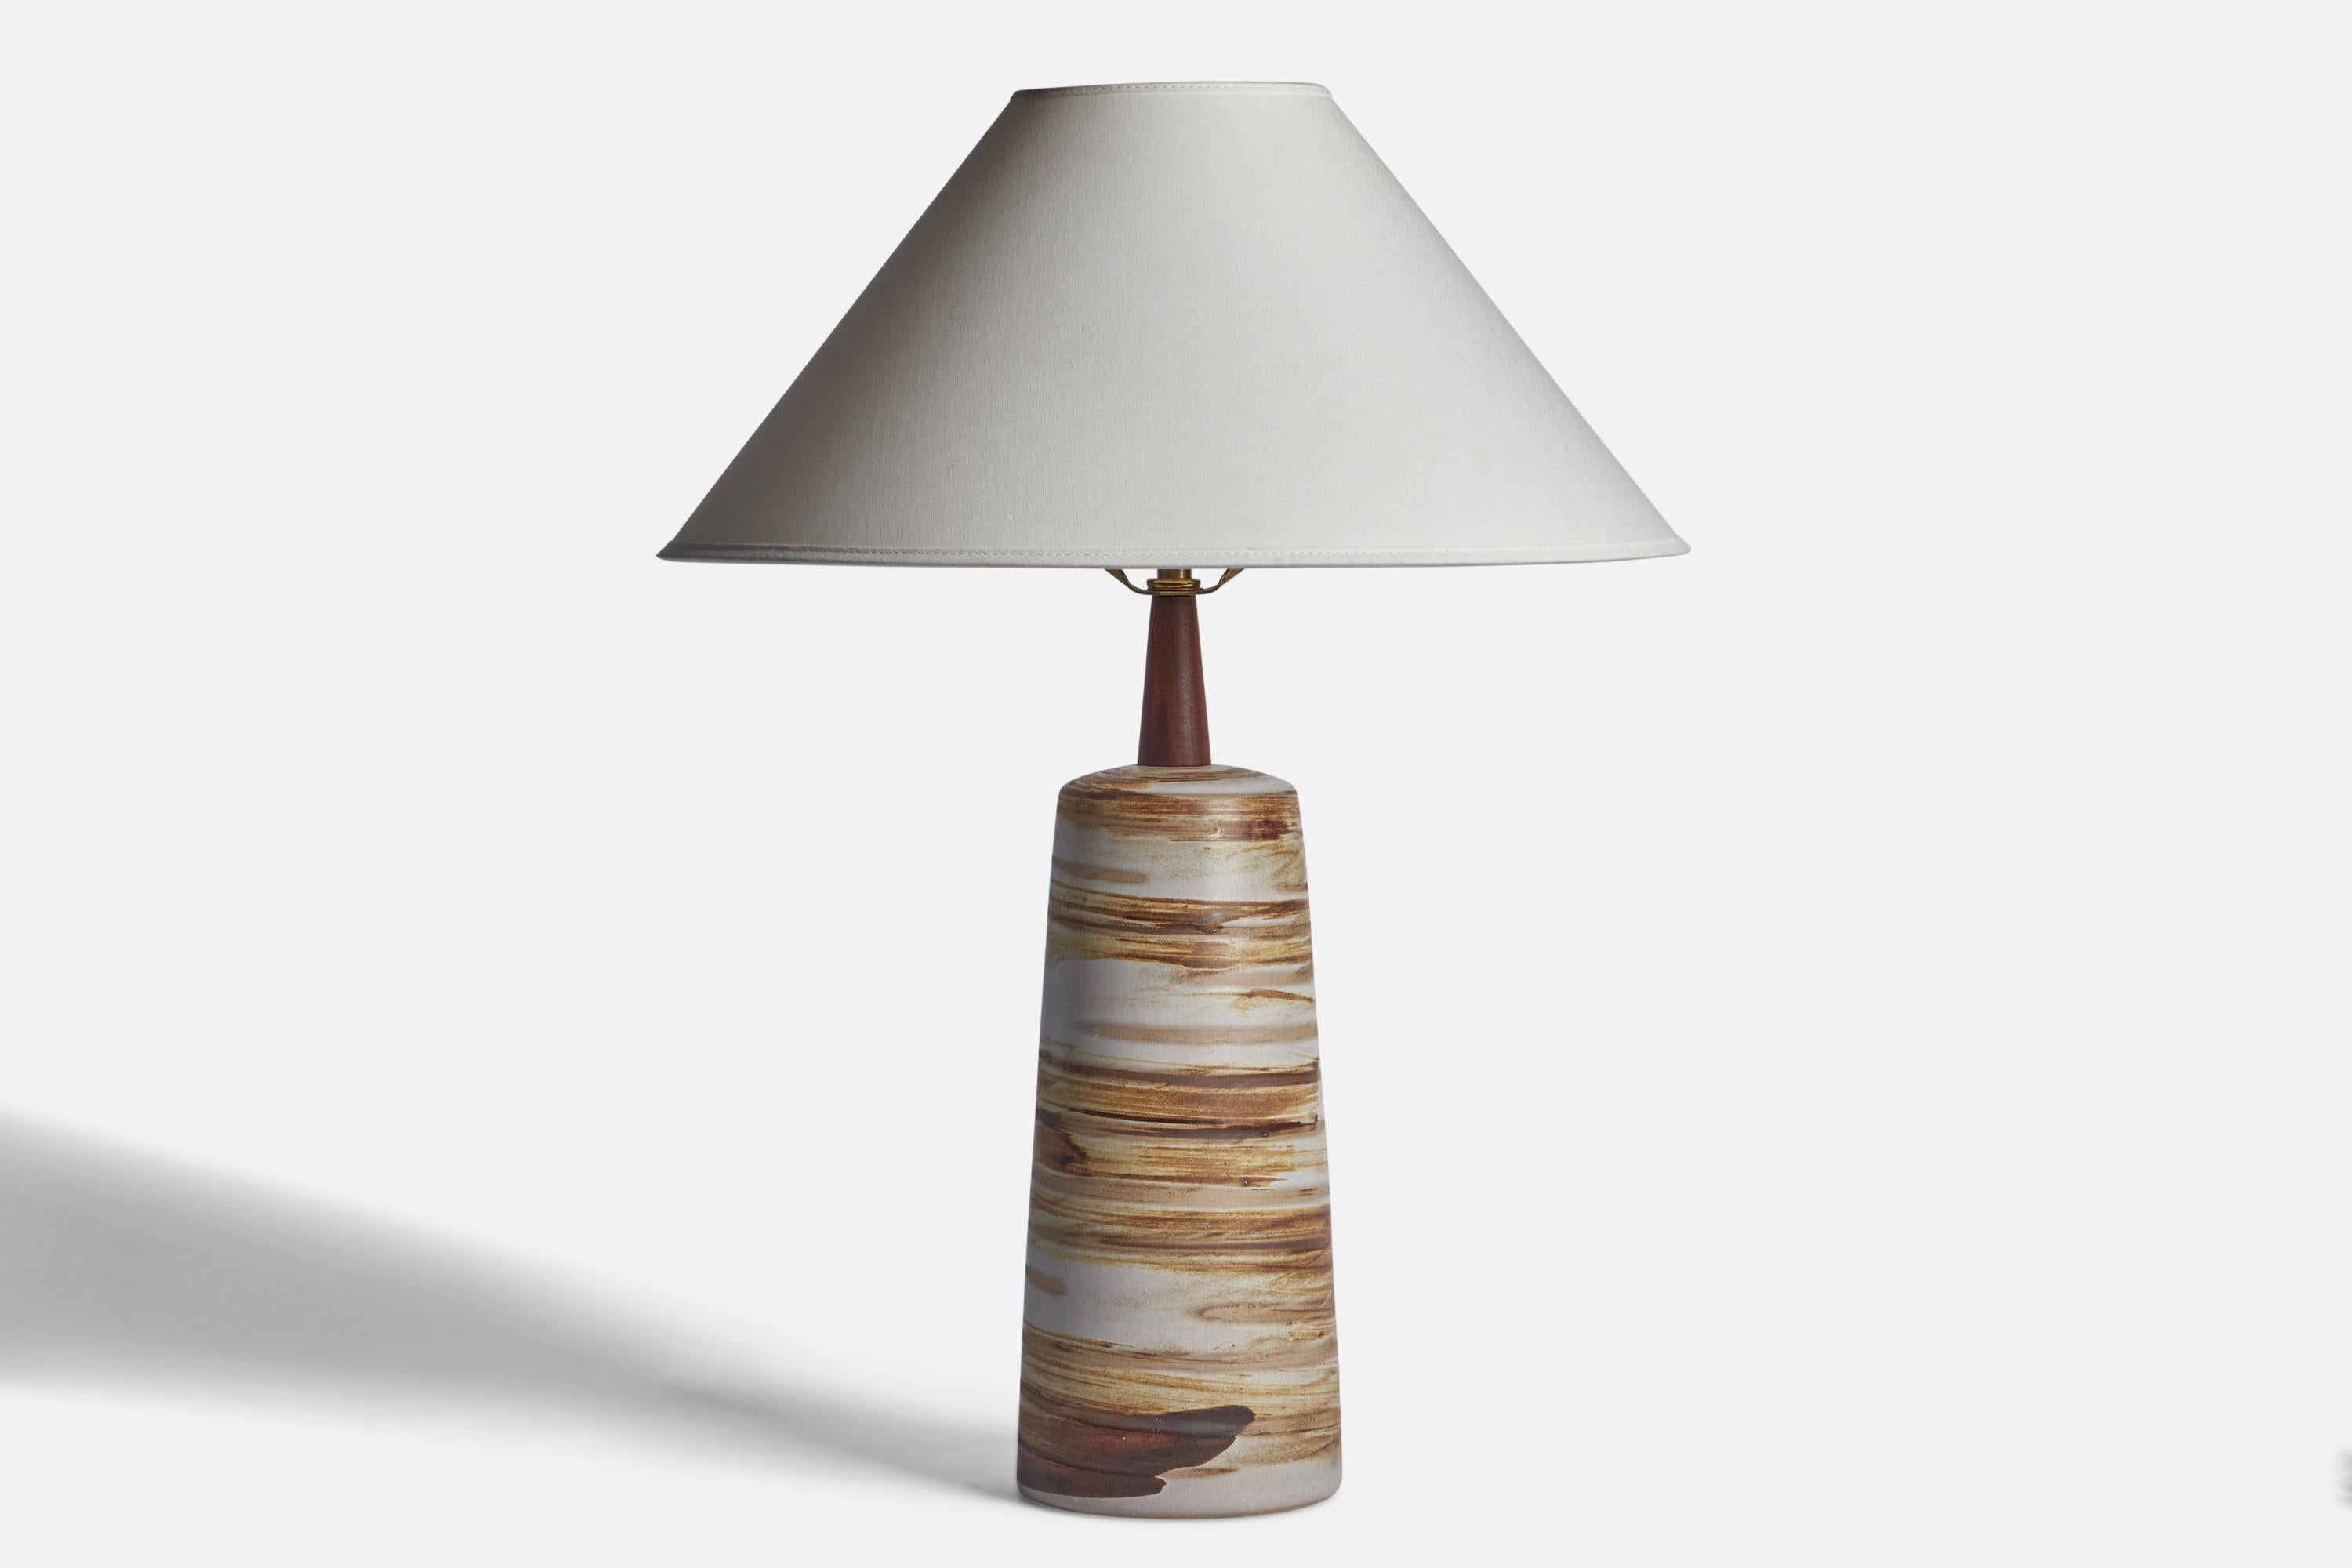 Lampe de table en céramique émaillée gris clair et brun et en noyer, conçue par Jane & Gordon Martz et produite par Marshall Studios, États-Unis, années 1960.

Dimensions de la lampe (pouces) : 16.95